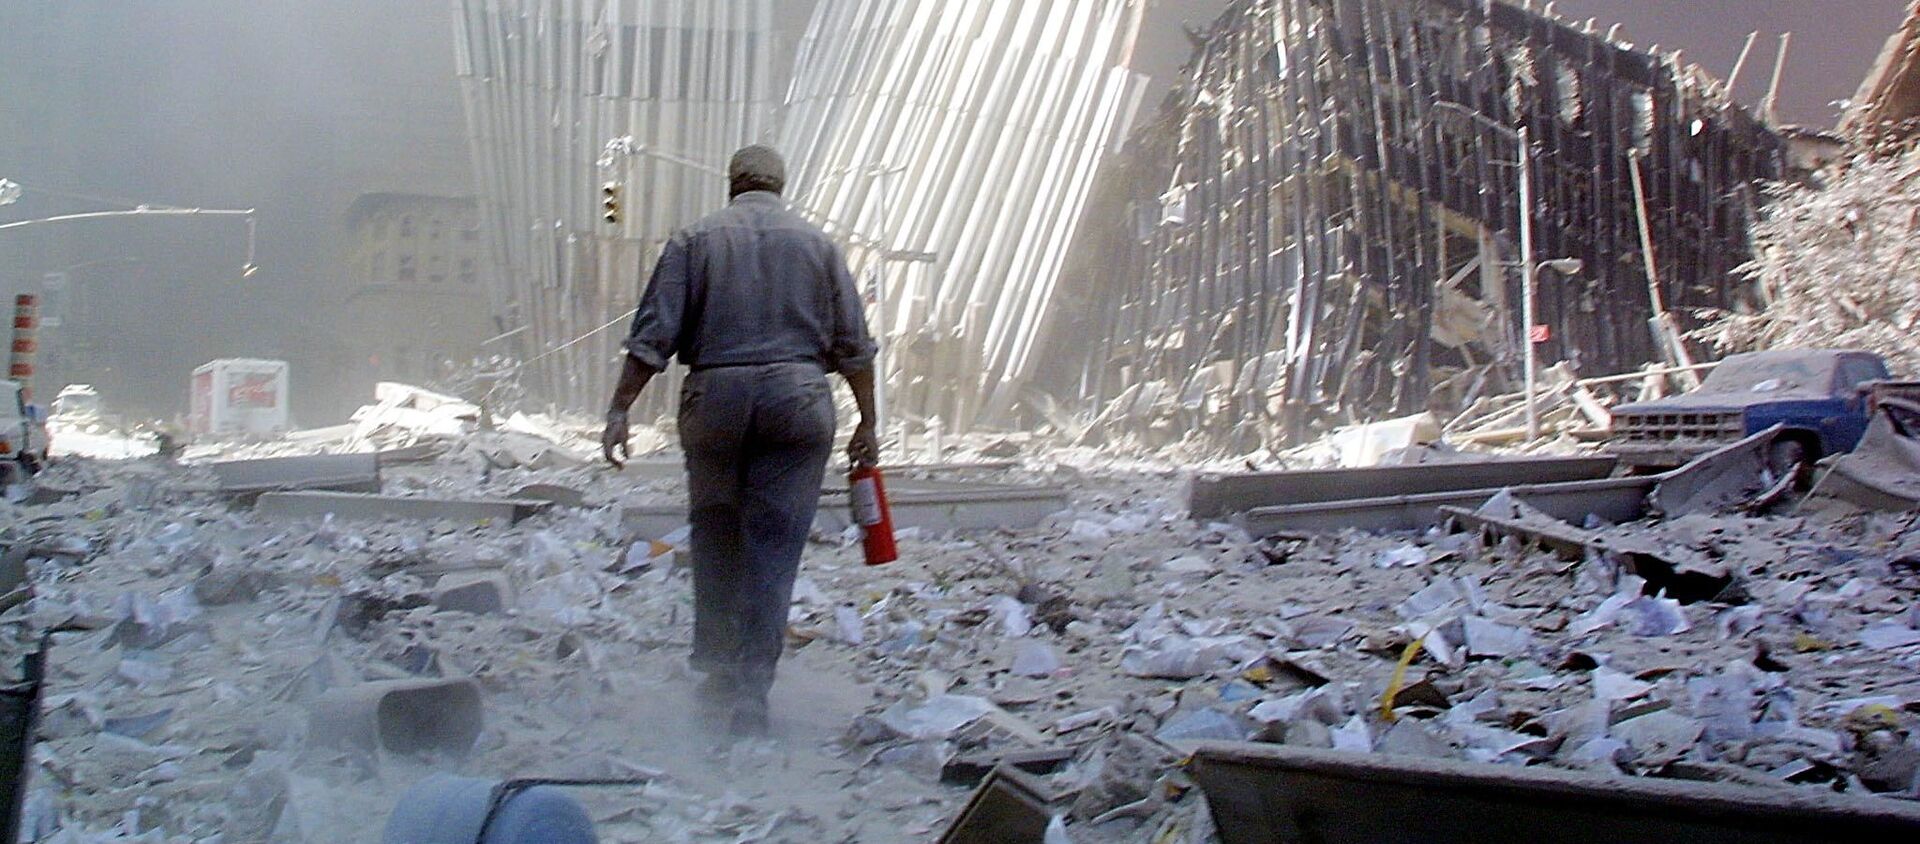 Мужчина с огнетушителем на месте атаки Всемирного торгового центра 11 сентября в Нью-Йорке - Sputnik Армения, 1920, 11.09.2020